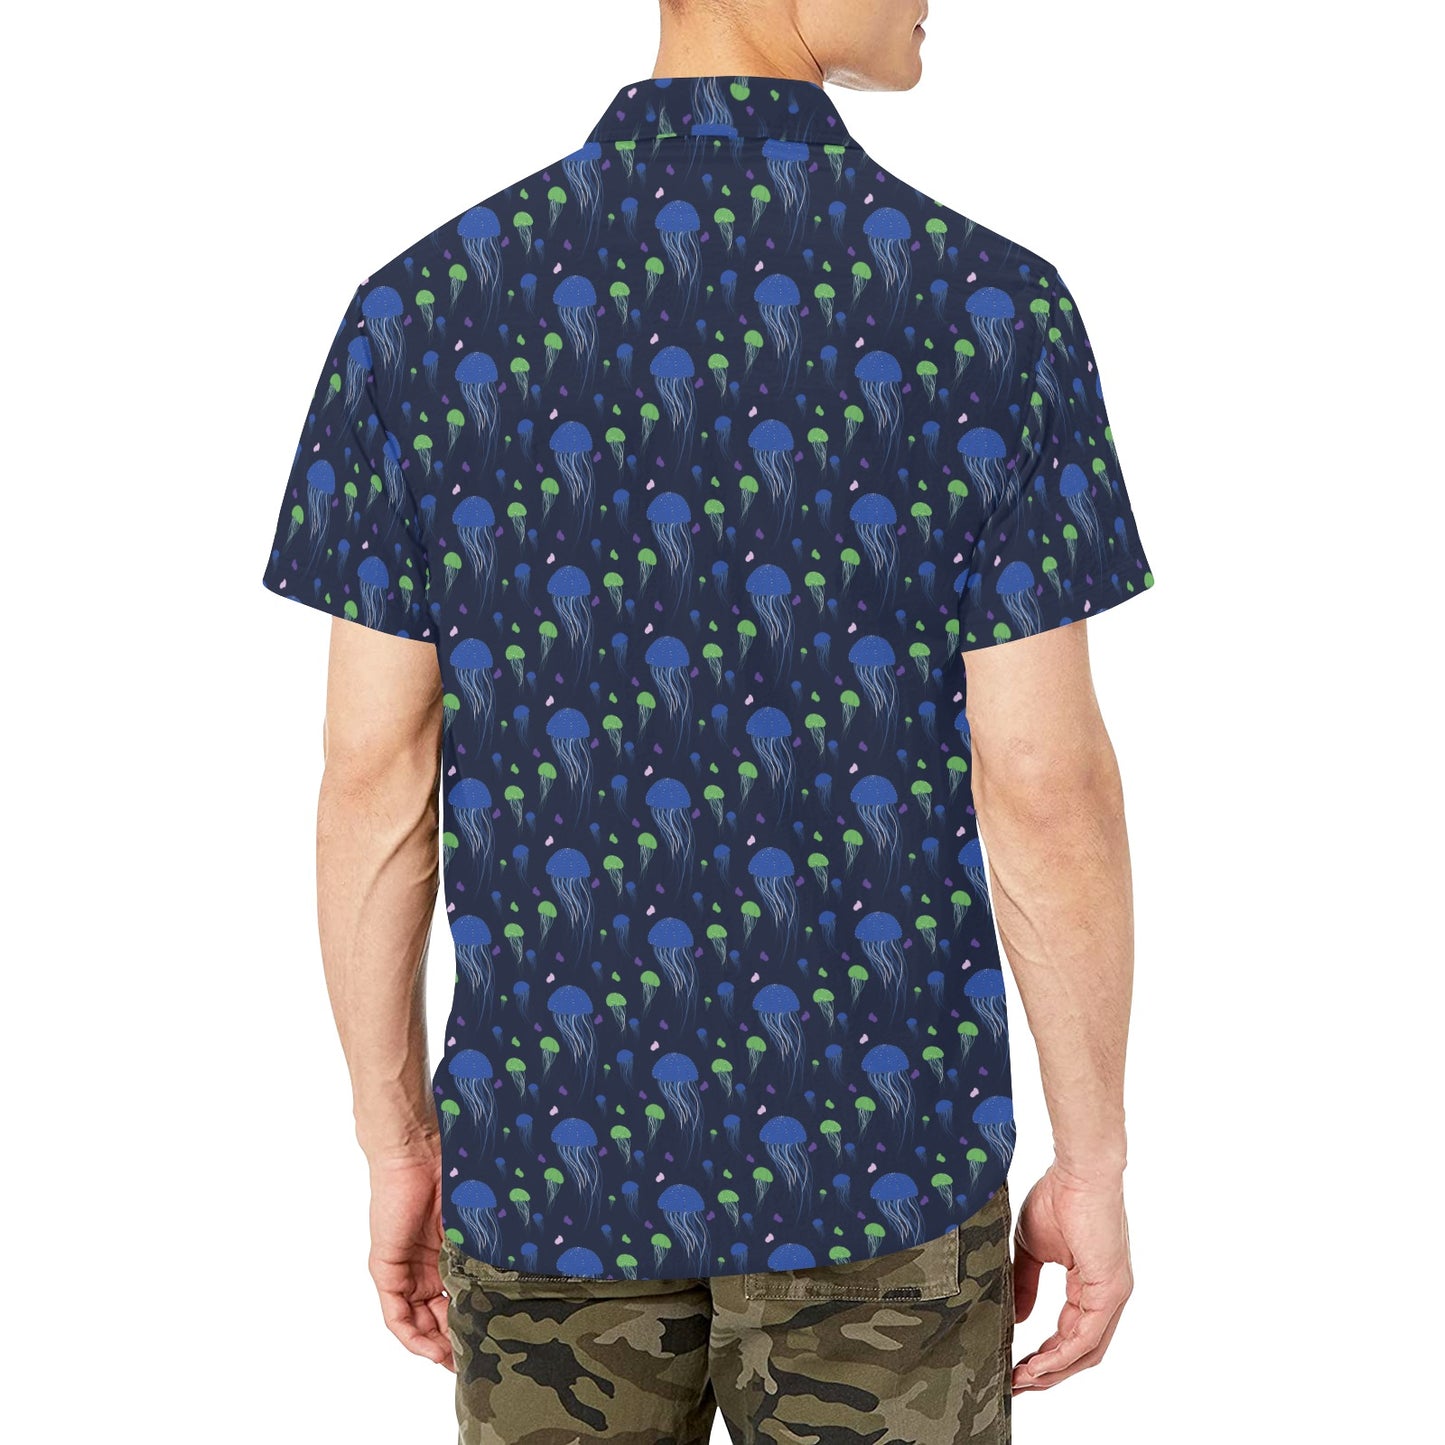 Jellyfish Men Button Down Shirt Chest Pocket, Ocean Sea Blue Short Sleeve Casual Print Buttoned Up Collar Dress Shirt